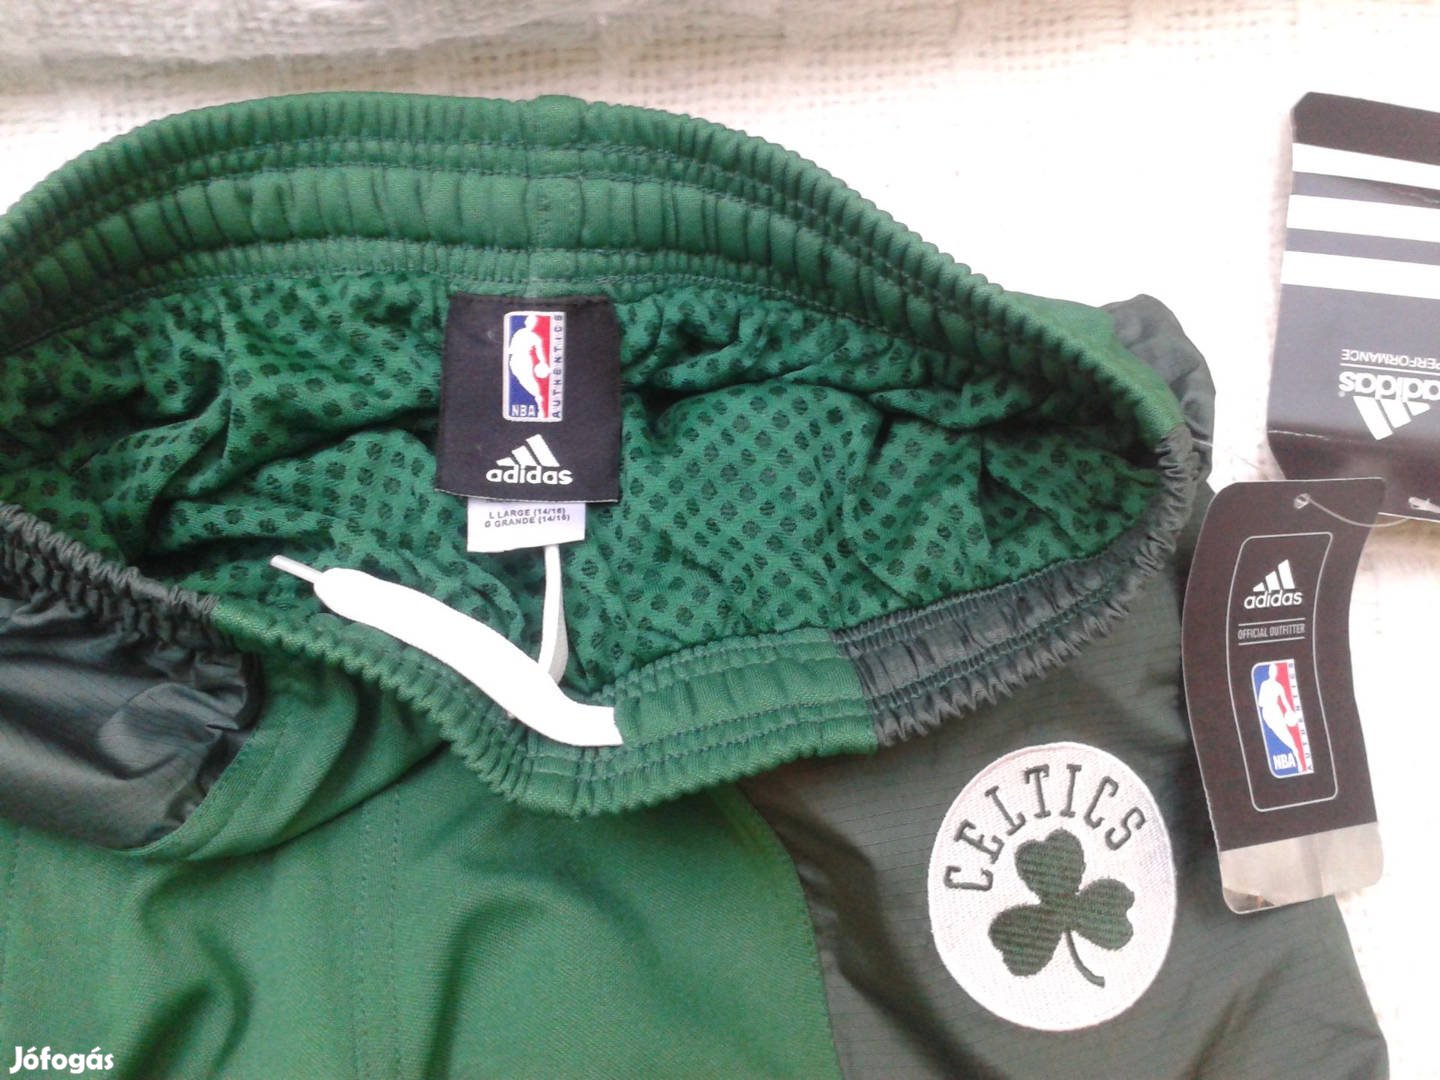 Eredeti új Adidas Boston Celtics gyerek L-es melegítő nadrág eladó